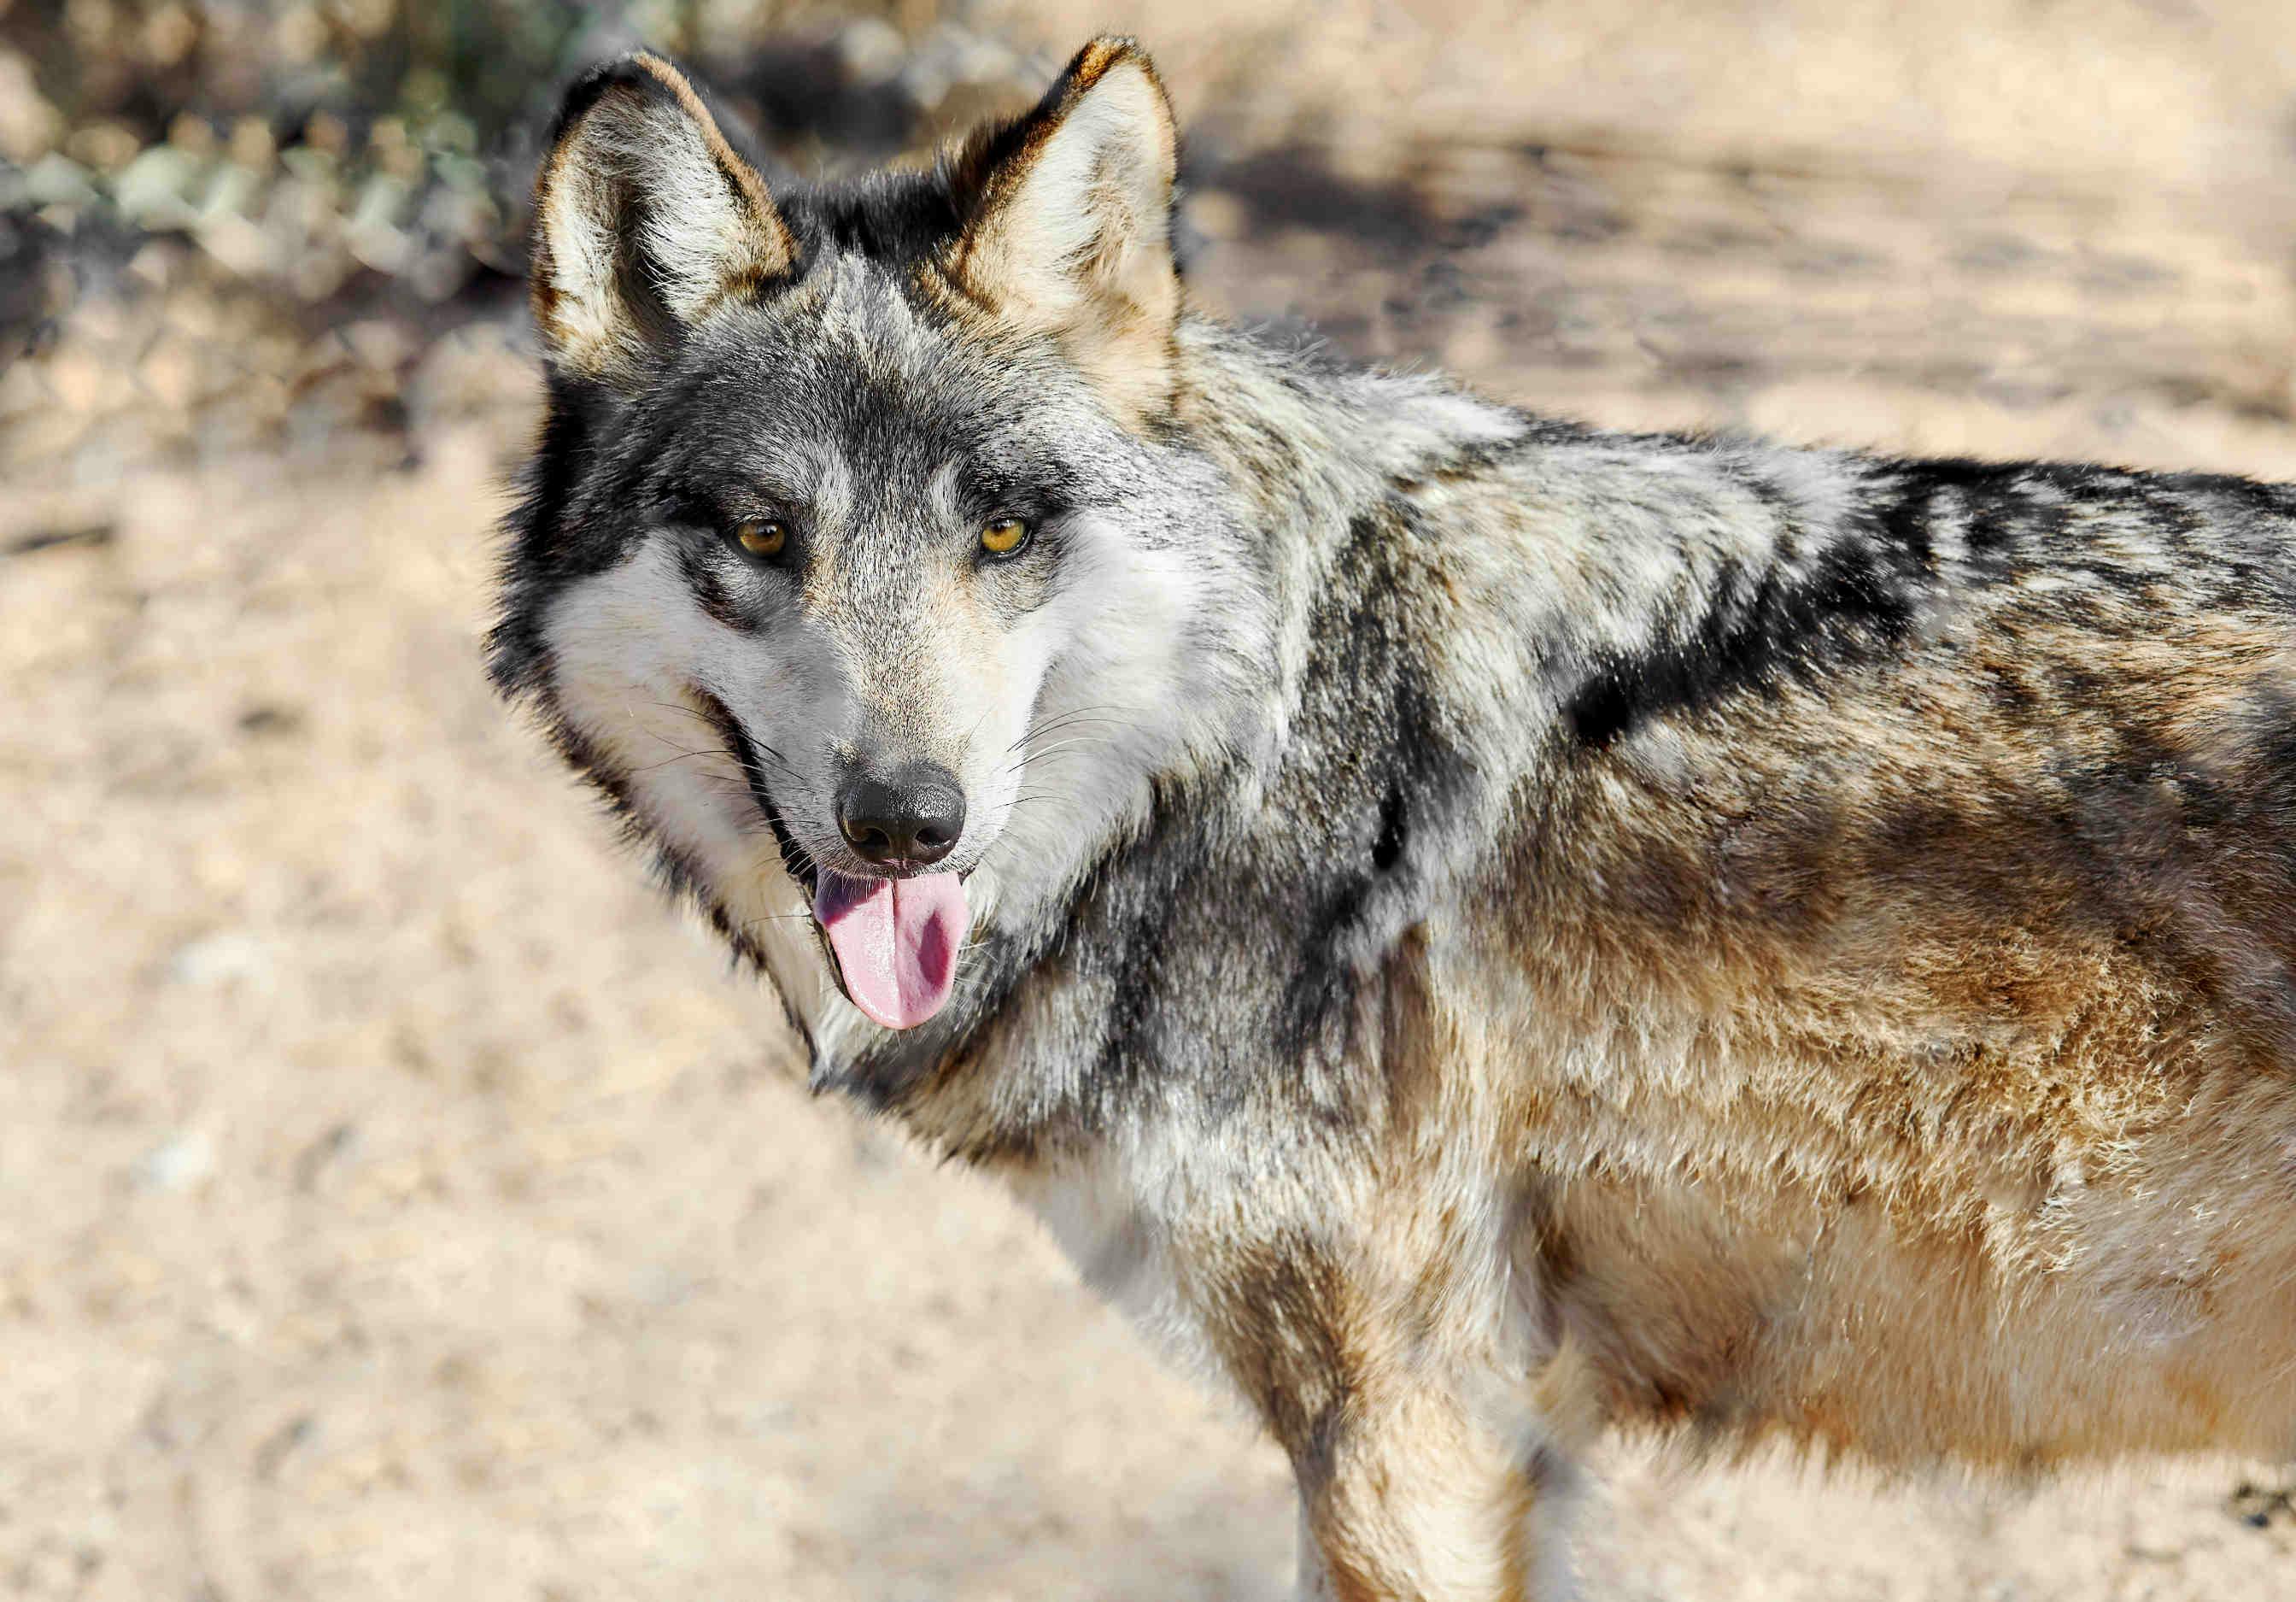 Diversità genetica: l’esempio dei lupi